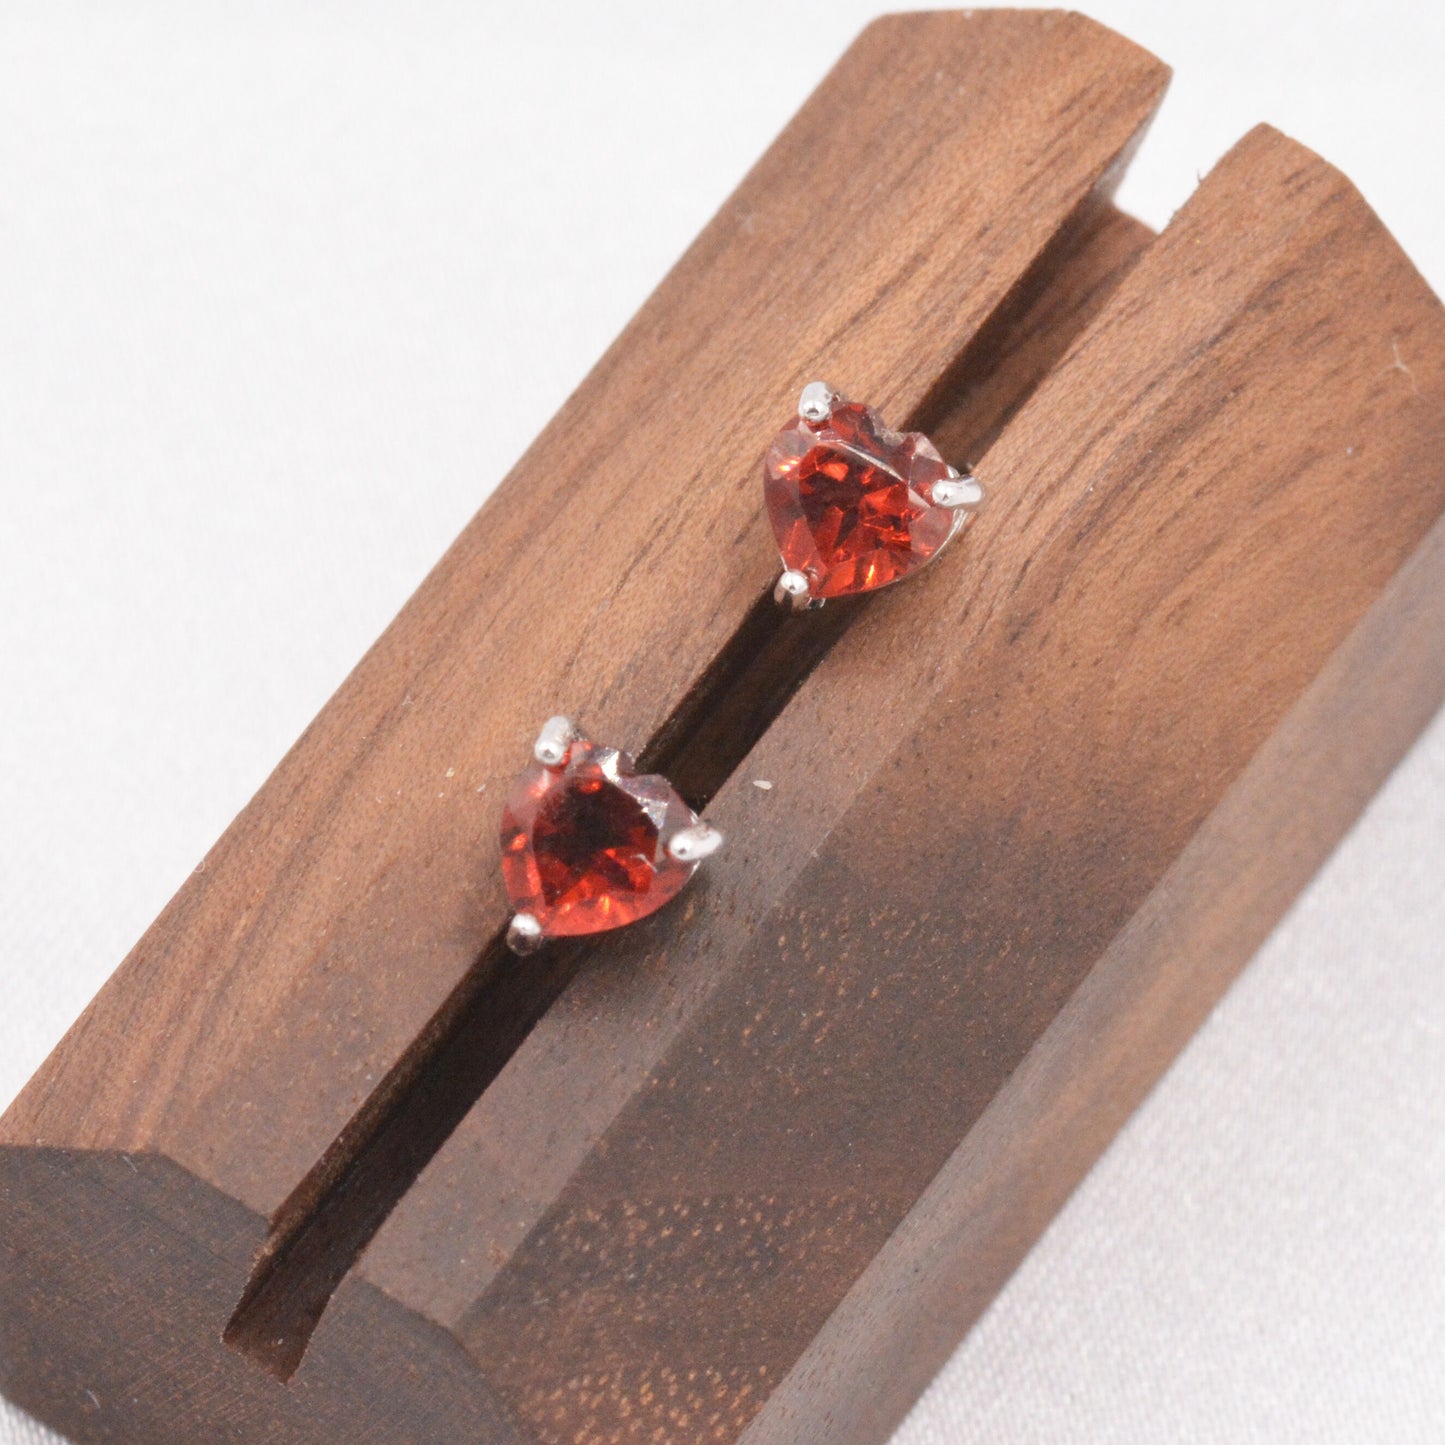 Natural Garnet Stone Heart Stud Earrings in Sterling Silver - 5mm Genuine Garnet Crystal Stud Earrings  - Semi Precious Gemstone